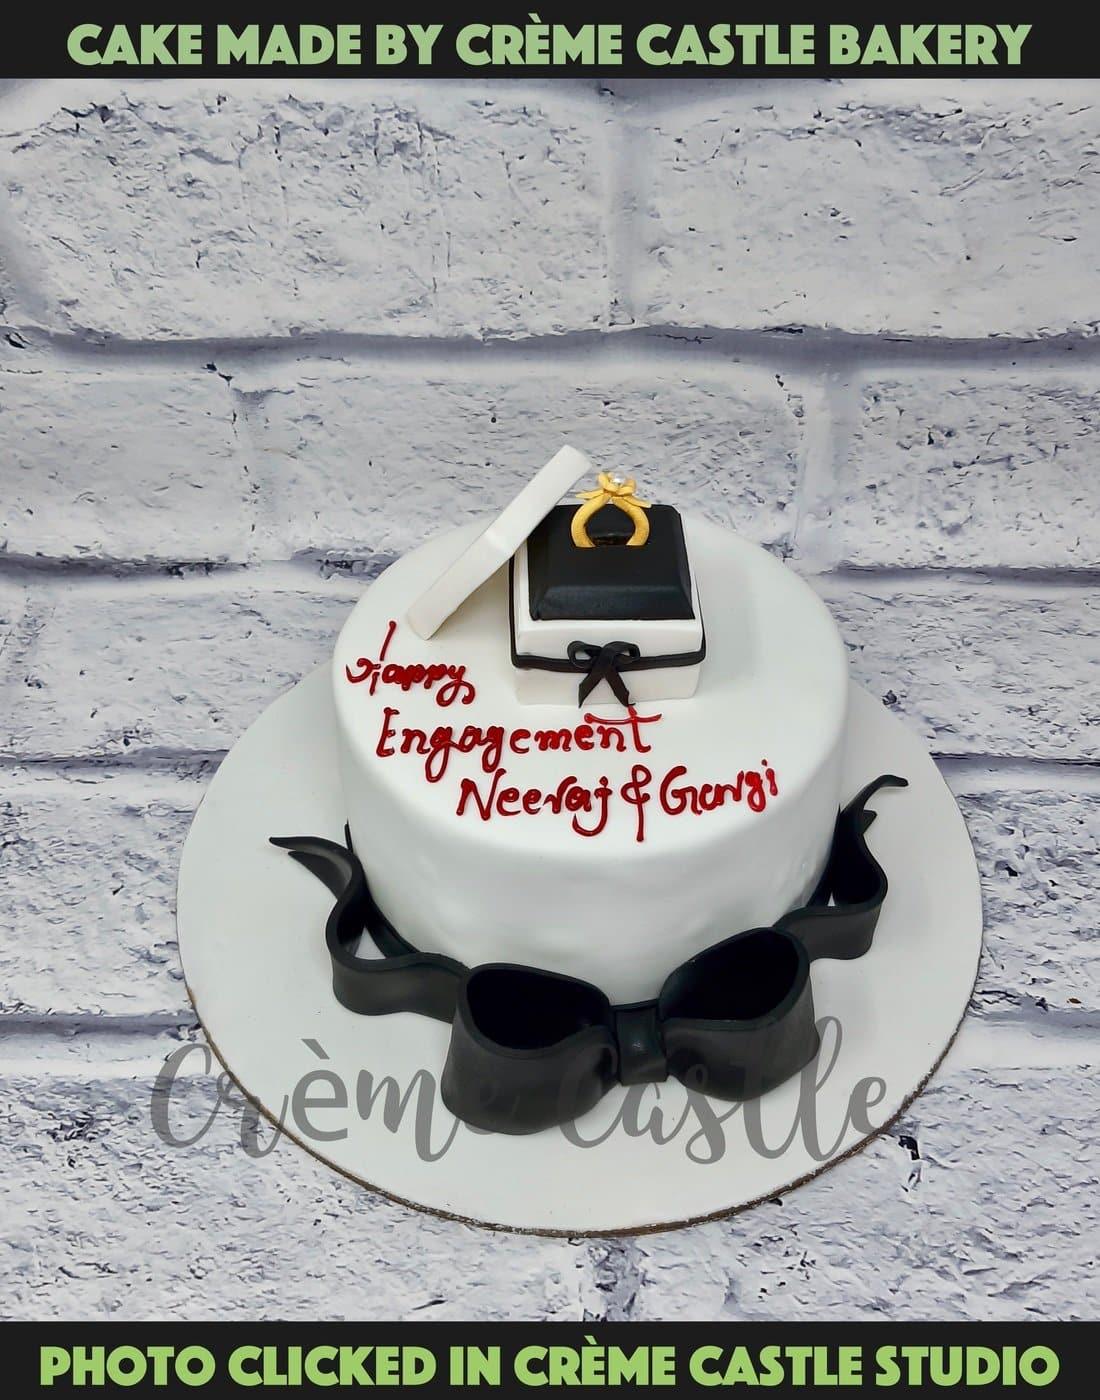 Ring Box Cake. Wedding Cake. Engagement Cake. Noida Gurgaon